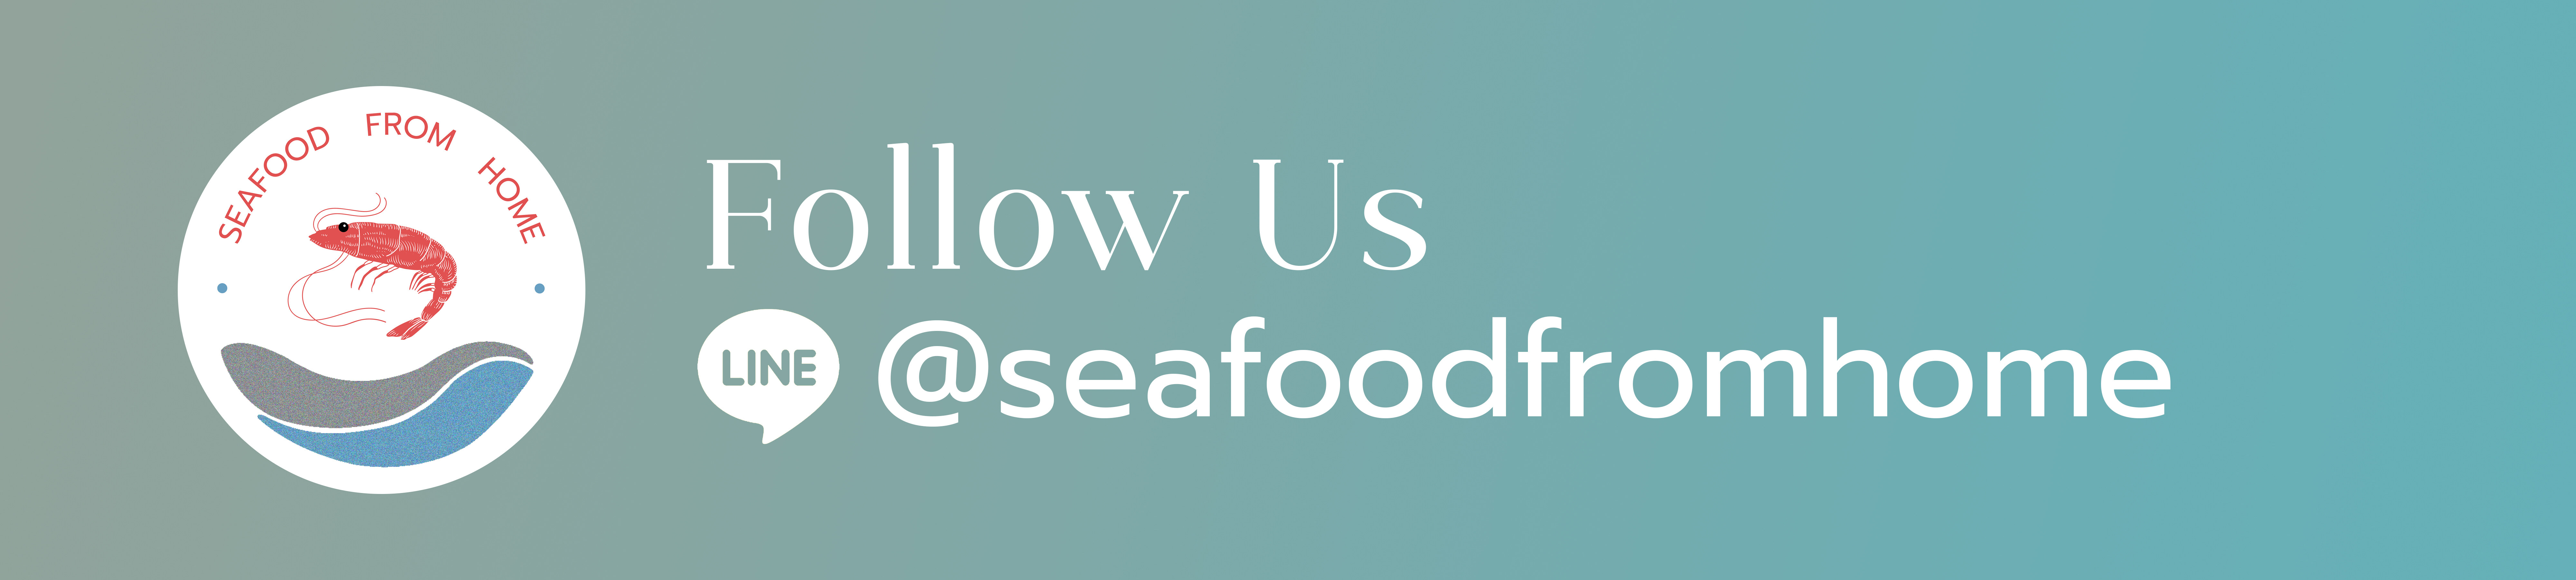 เกี่ยวกับ 《ส่งฟรี》กุ้งแชบ๊วย กุ้งทะเลอันดามัน อวนลอย หวานๆสดๆ สะอาด ปลอดสาร ตัวใสปิ๊งๆ ซีลสูญญากาศ | Seafood From Home